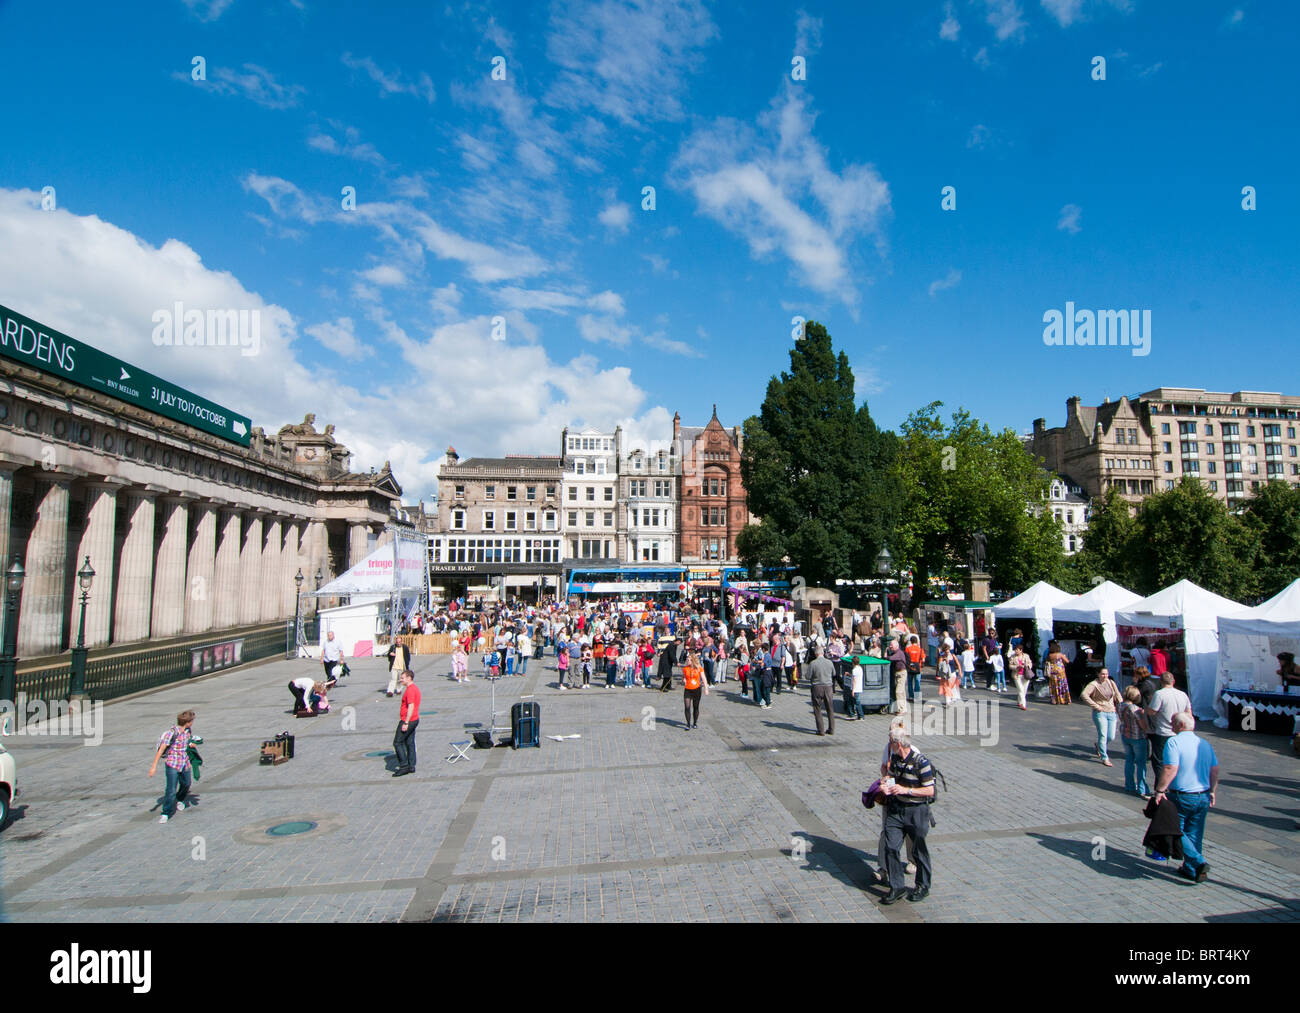 Les musées nationaux d'Écosse, Édimbourg avec Prince's Street dans l'arrière-plan Banque D'Images